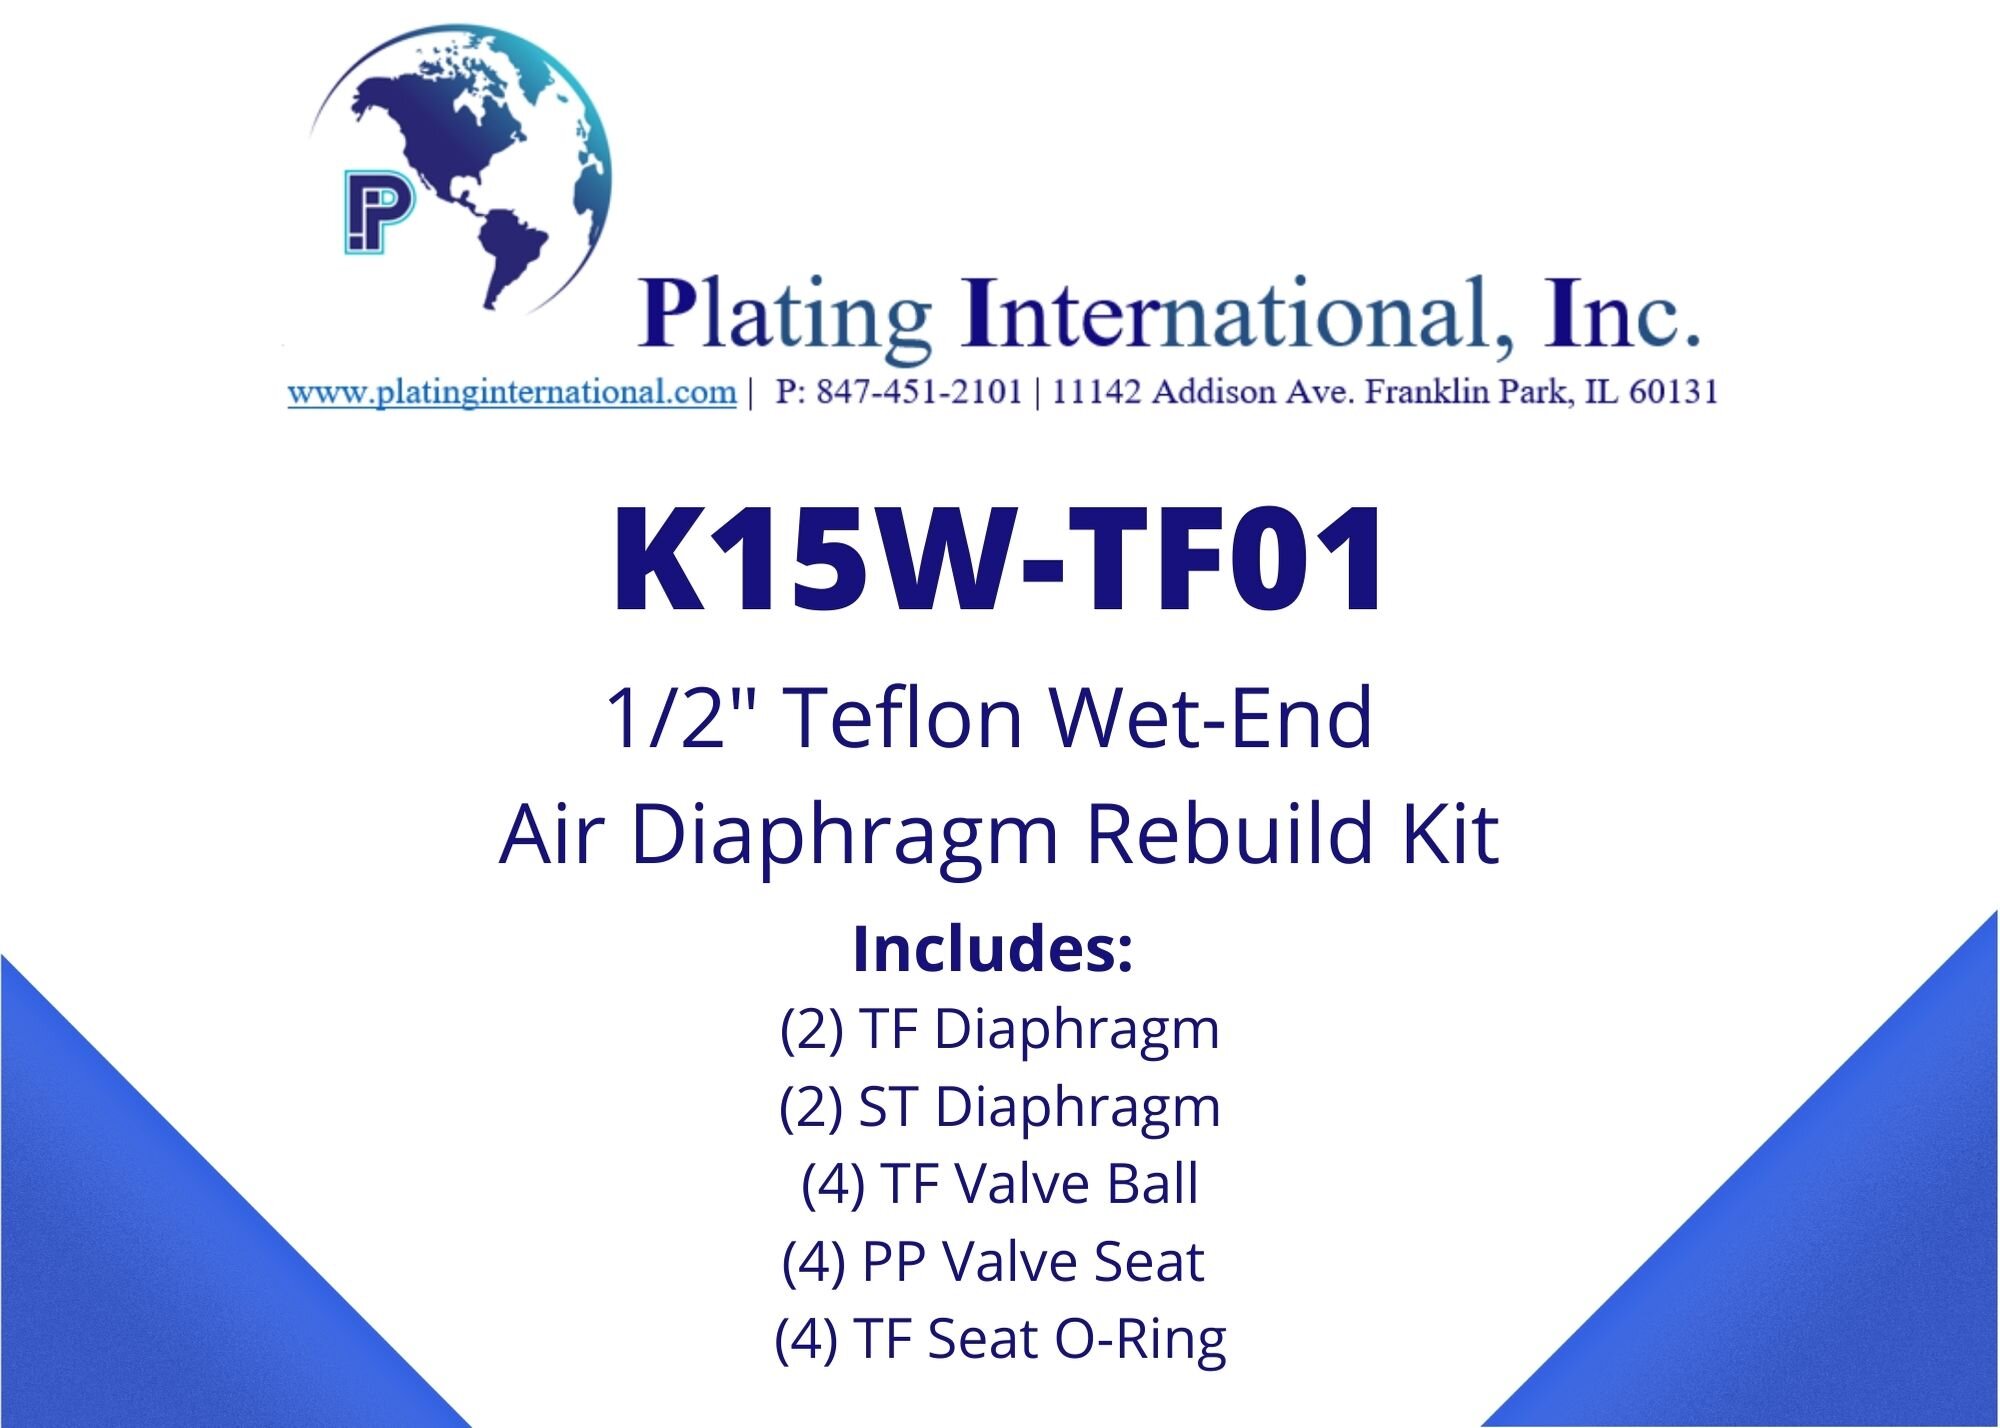 Plating International Air Diaphragm Kit for a 1.5" Air Diaphragm Pump 